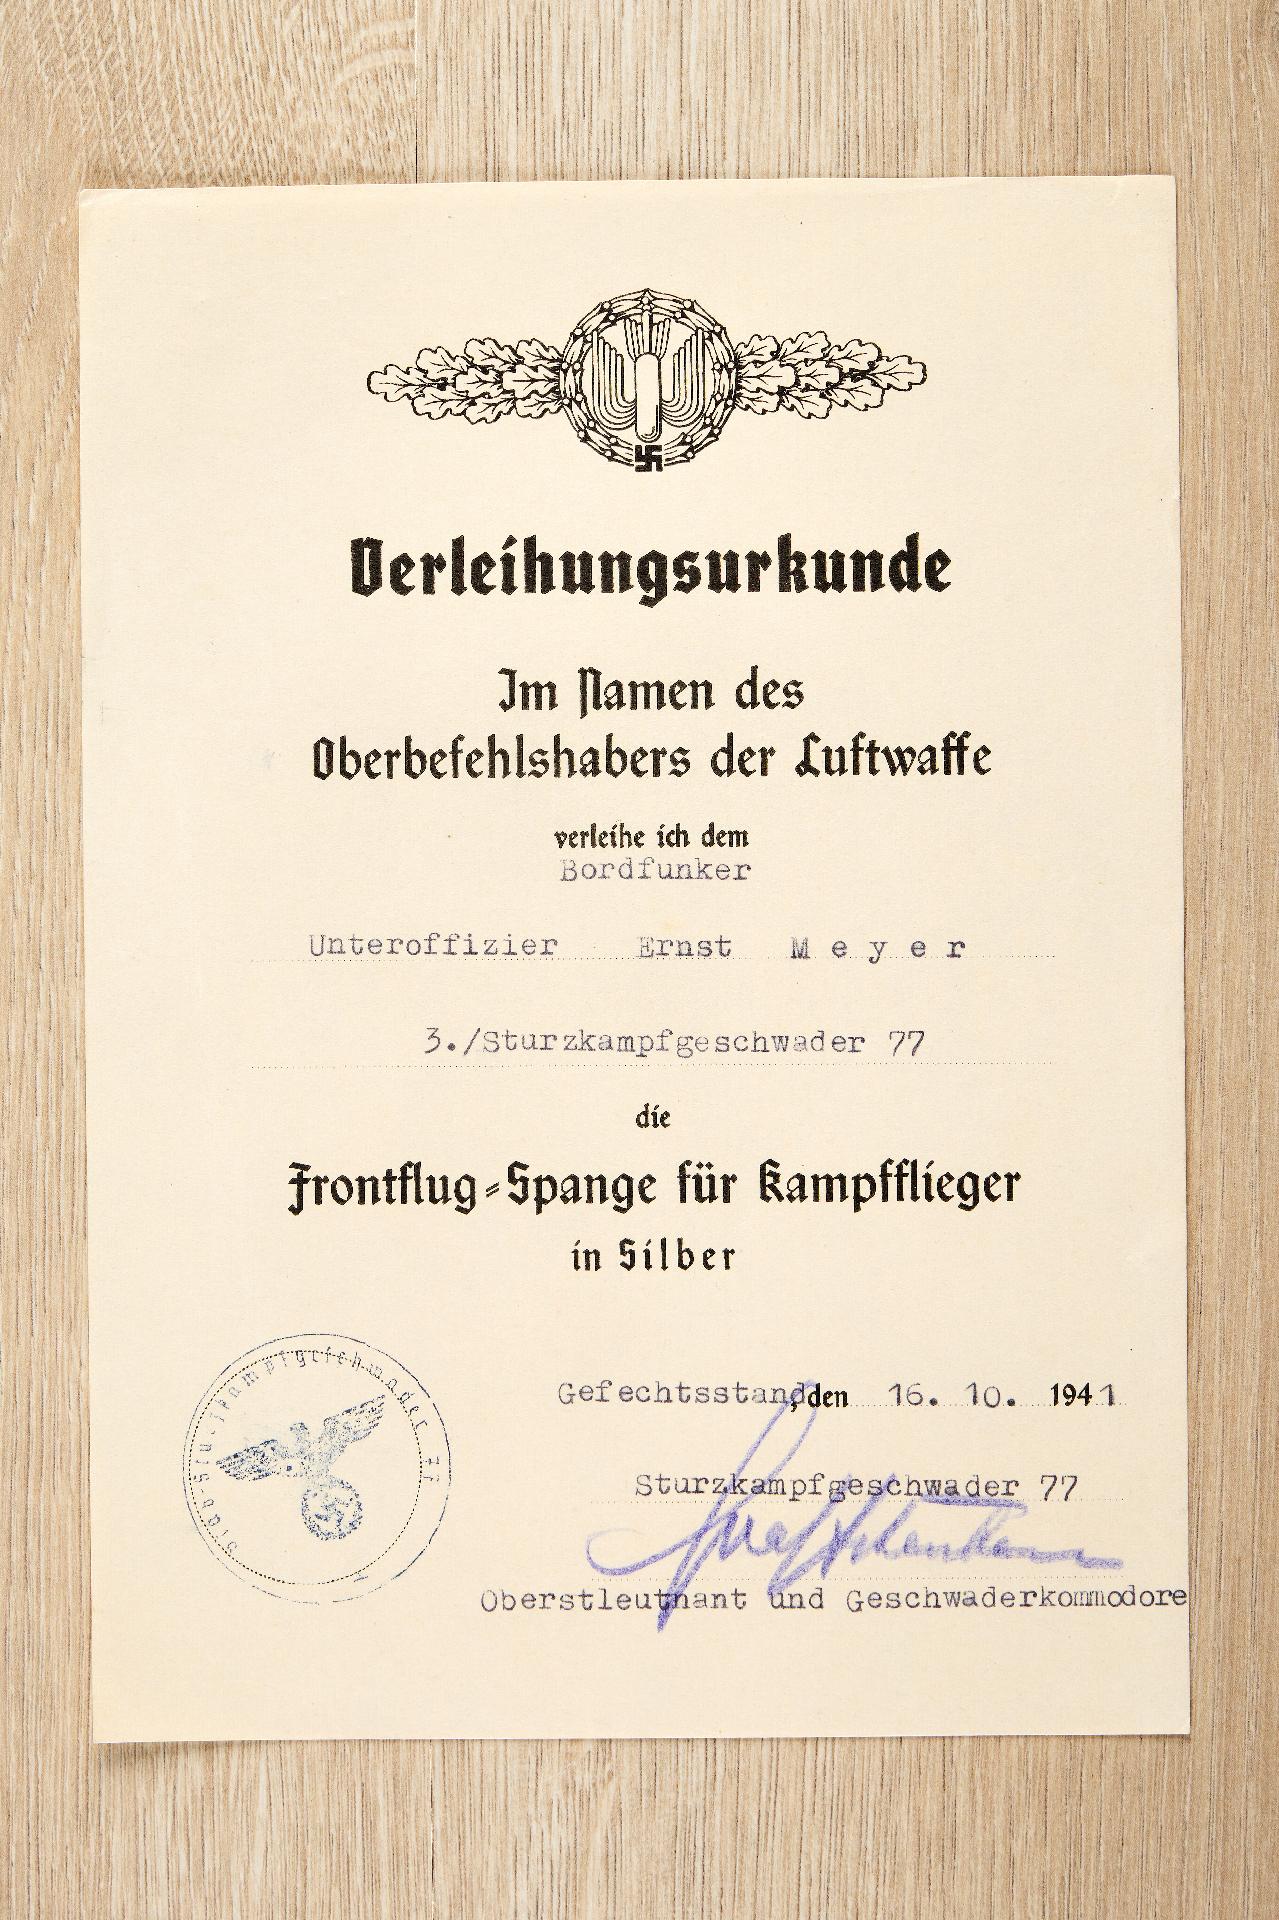 Allgemein : Nachlass des Feldwebels Ernst Meyer, 1./Sturzkampfgeschwader 77 - Image 43 of 55